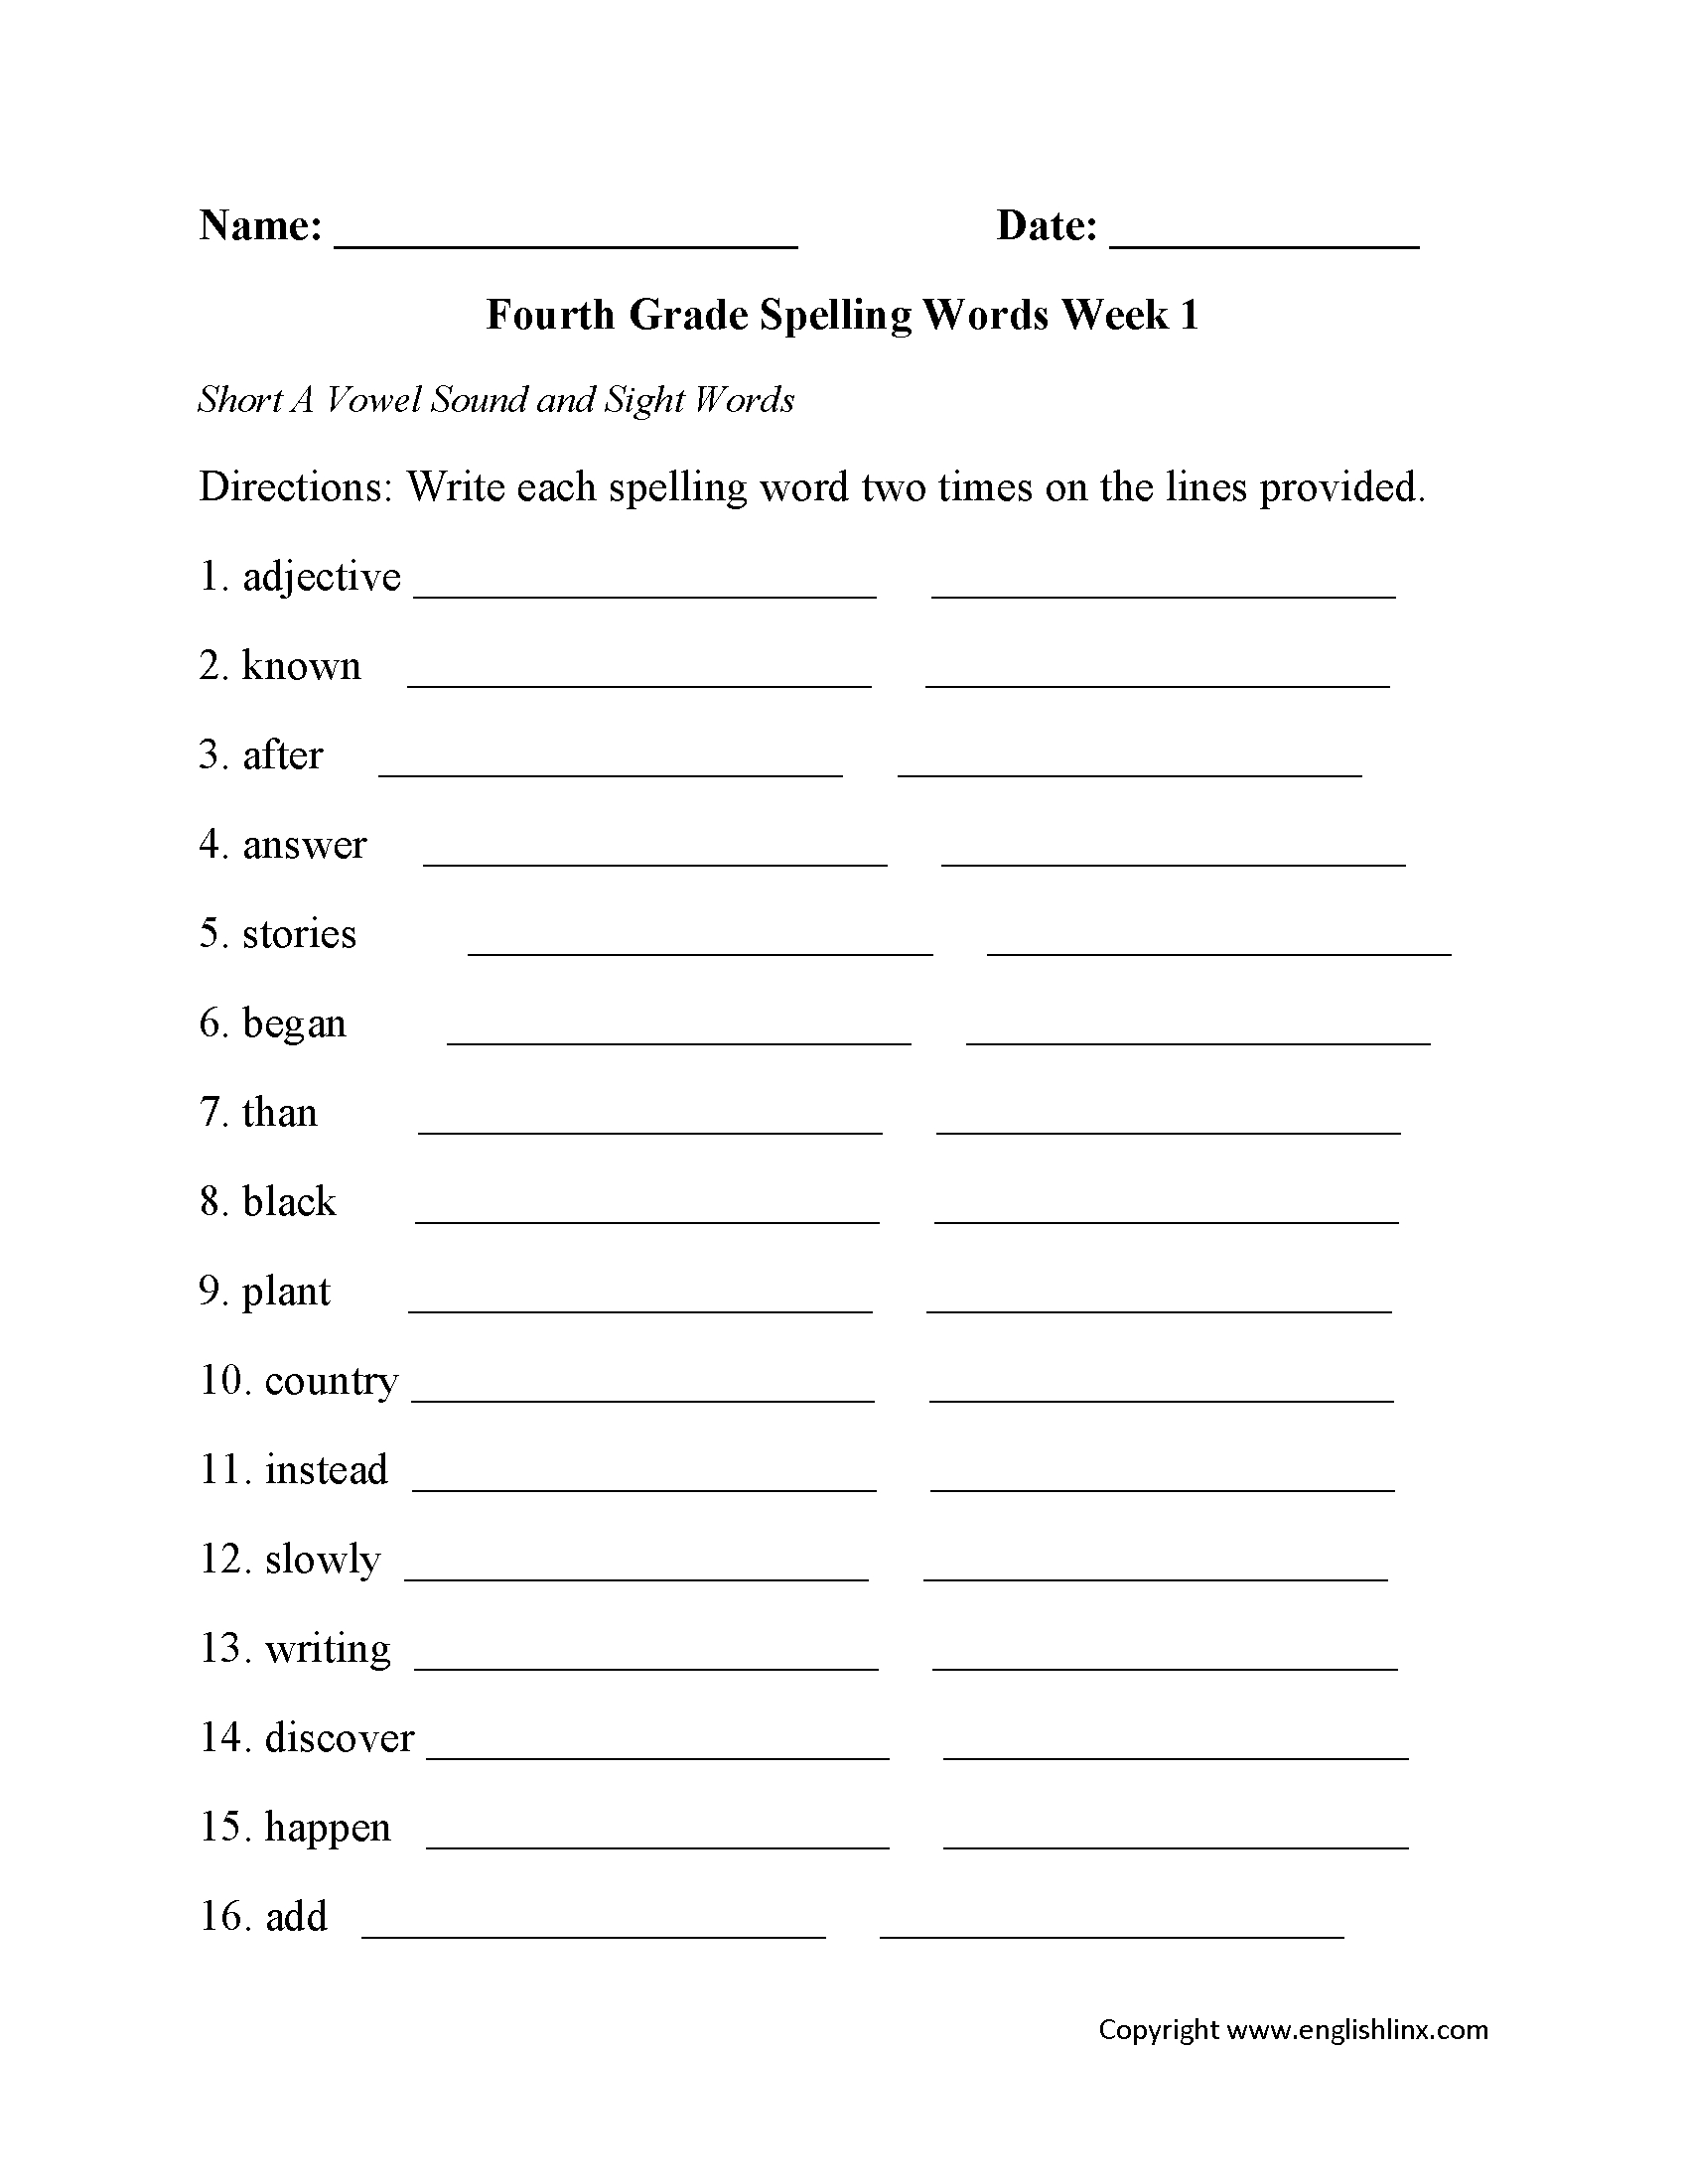 Spelling Worksheets | Fourth Grade Spelling Worksheets | Free Printable Spelling Worksheets